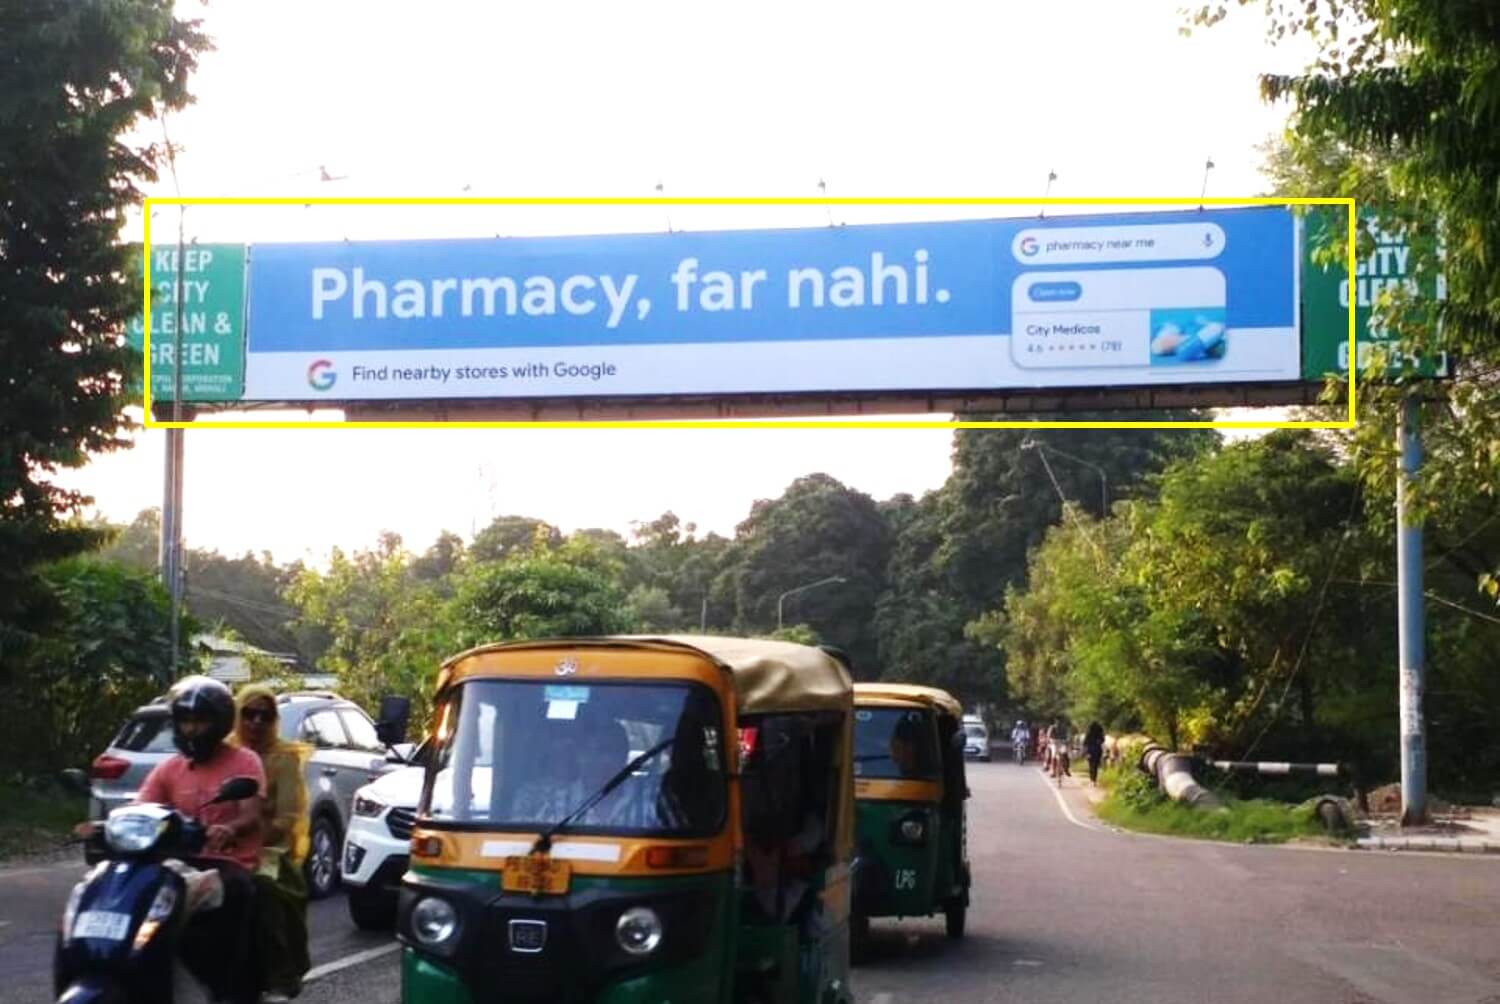 Gantry Advertising at Phase - 9 PCA Stadium (Traffic Facing Stadium), Mohali, Punjab